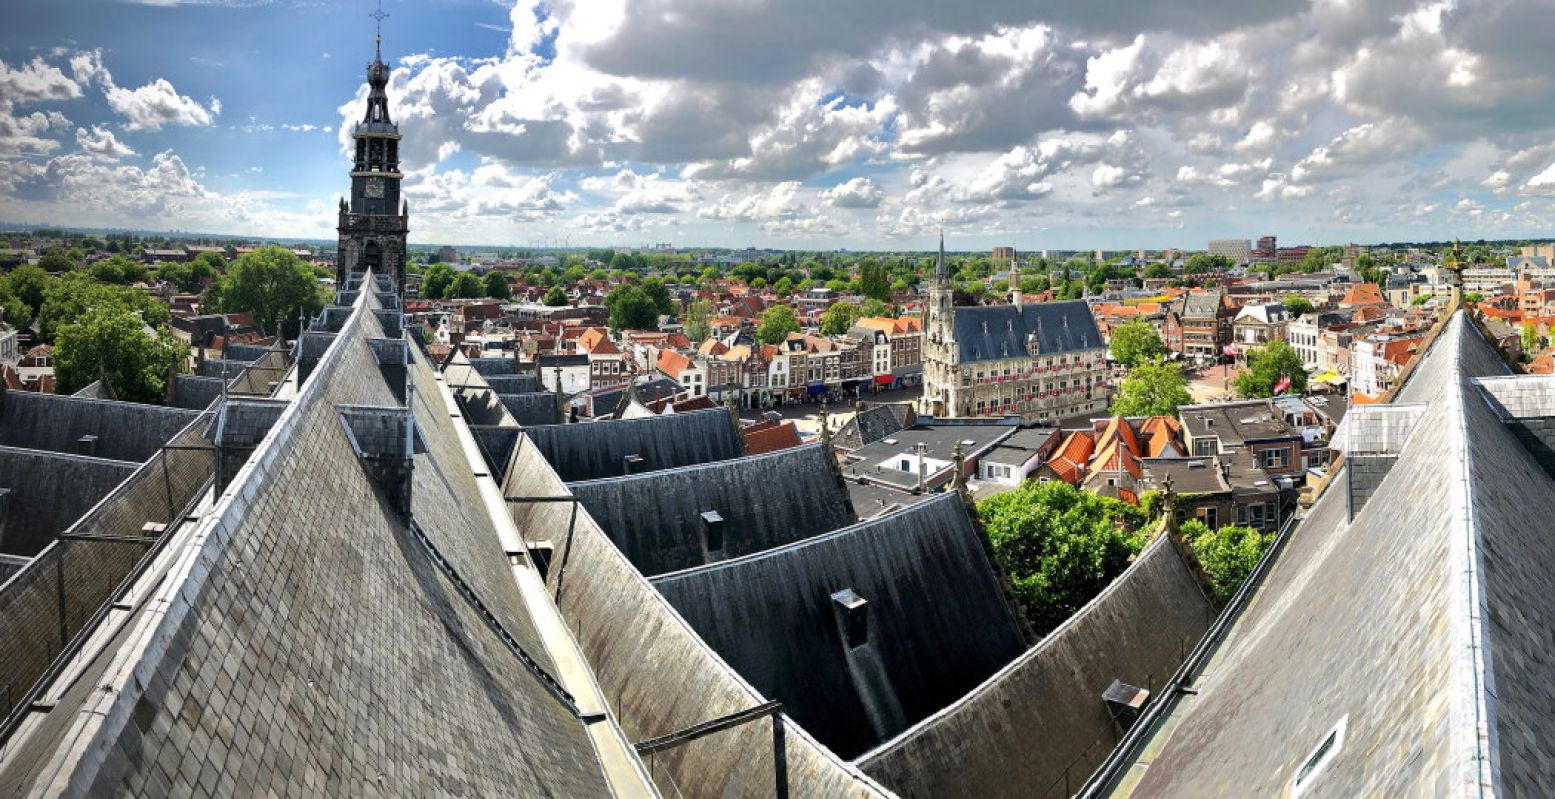 Op het dak van de Sint-Janskerk heb je een prachtig uitzicht over de stad. Foto: VVV Gouda